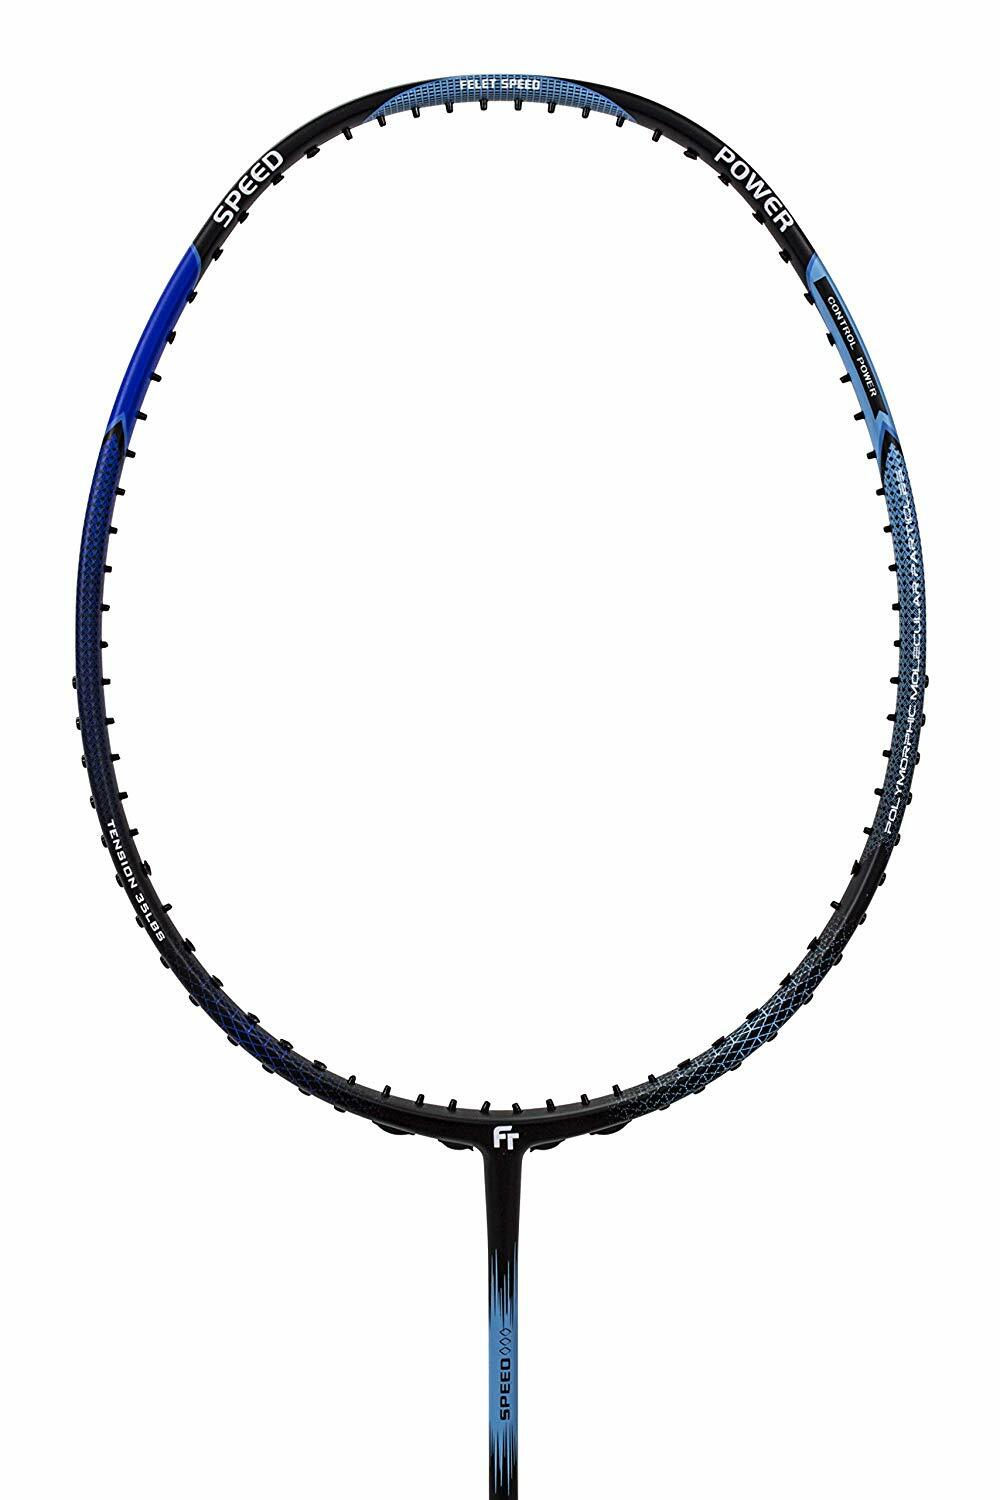 Fleet Felet Speed S-728 Badminton Racket